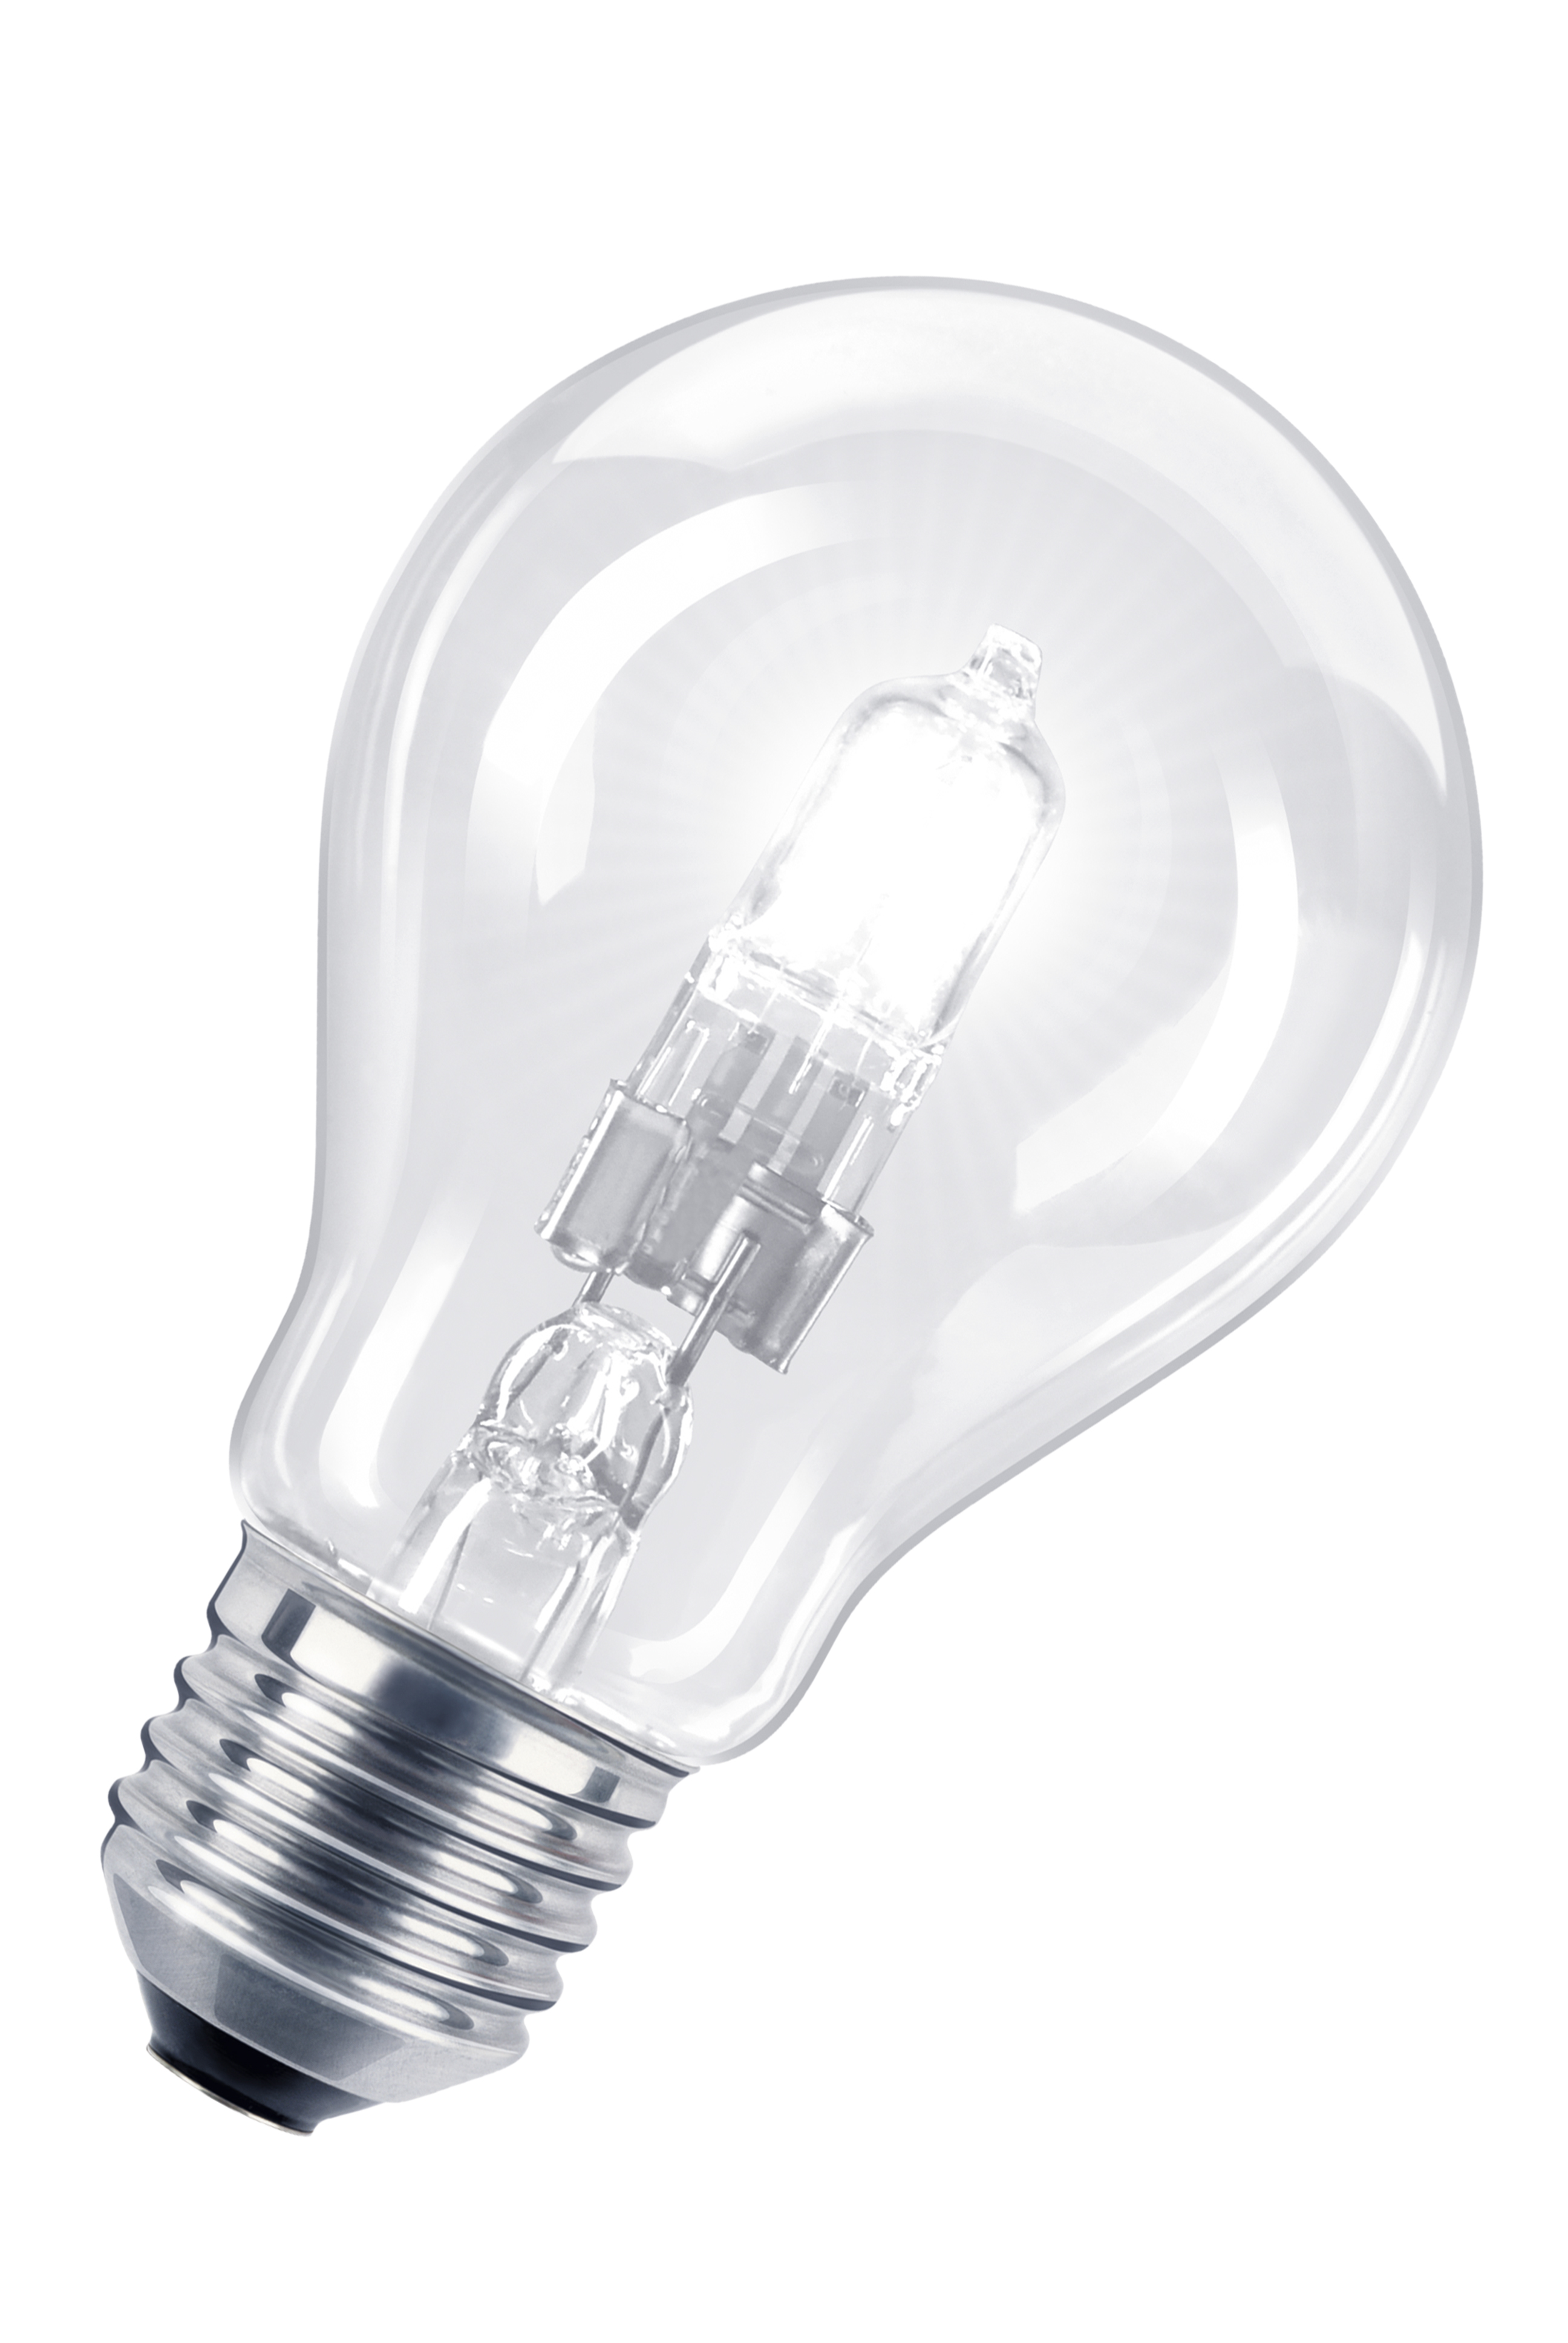 08714681073247 - Lampe halogène basse tension avec réflecteur - Lampes -  e-Bailey